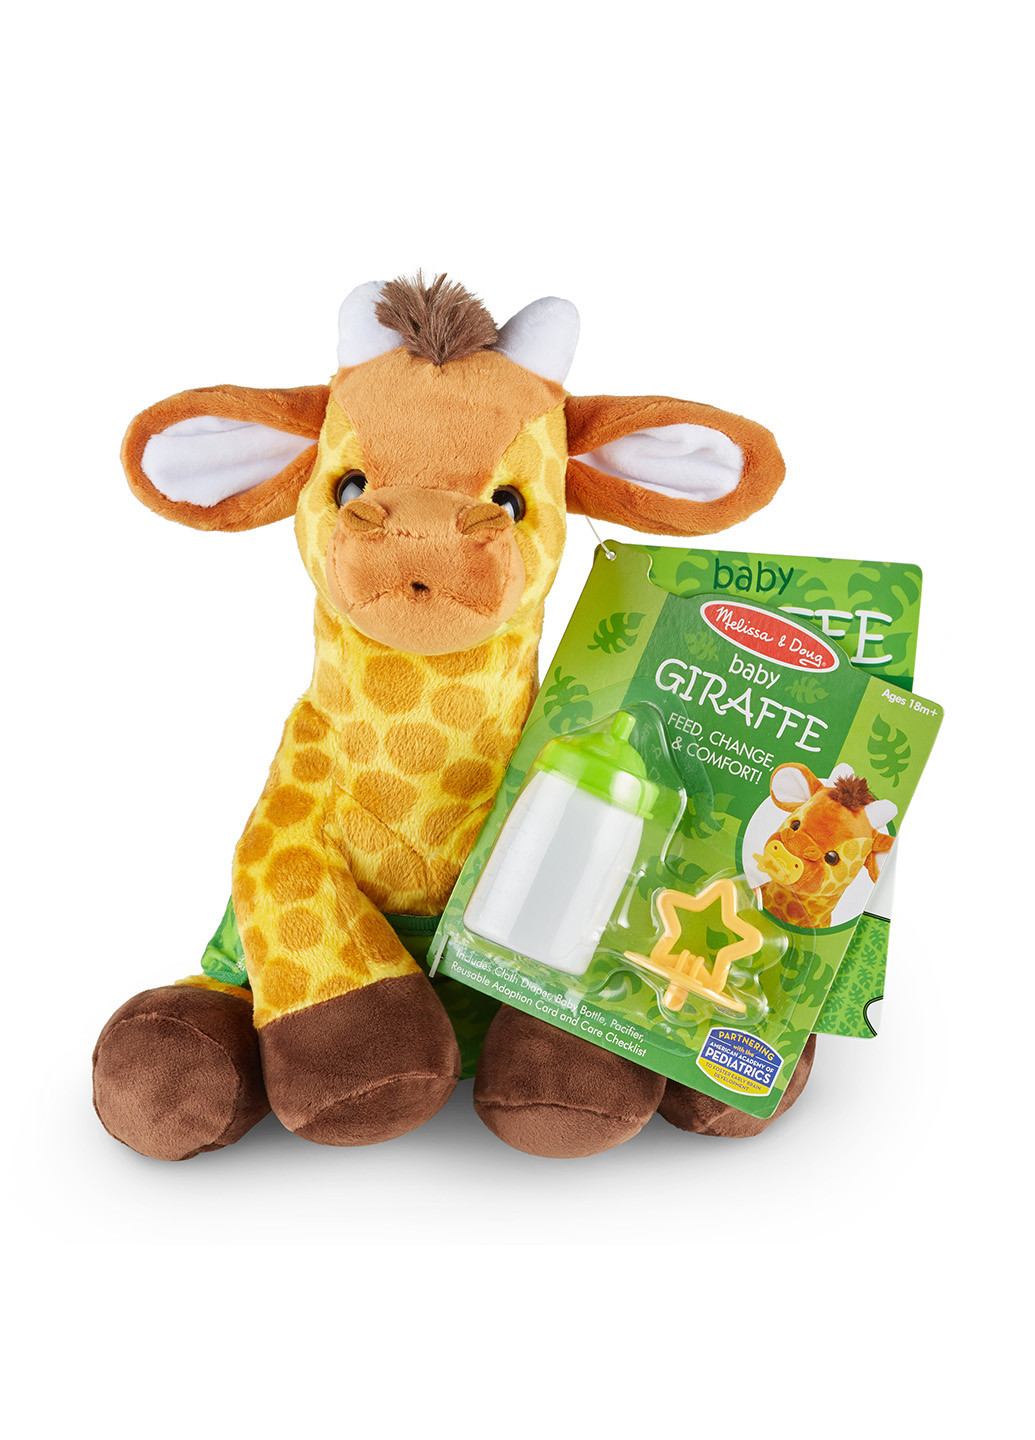 Мягкая игрушка Жираф, 25,5х23x18 см Melissa & Doug (251711174)